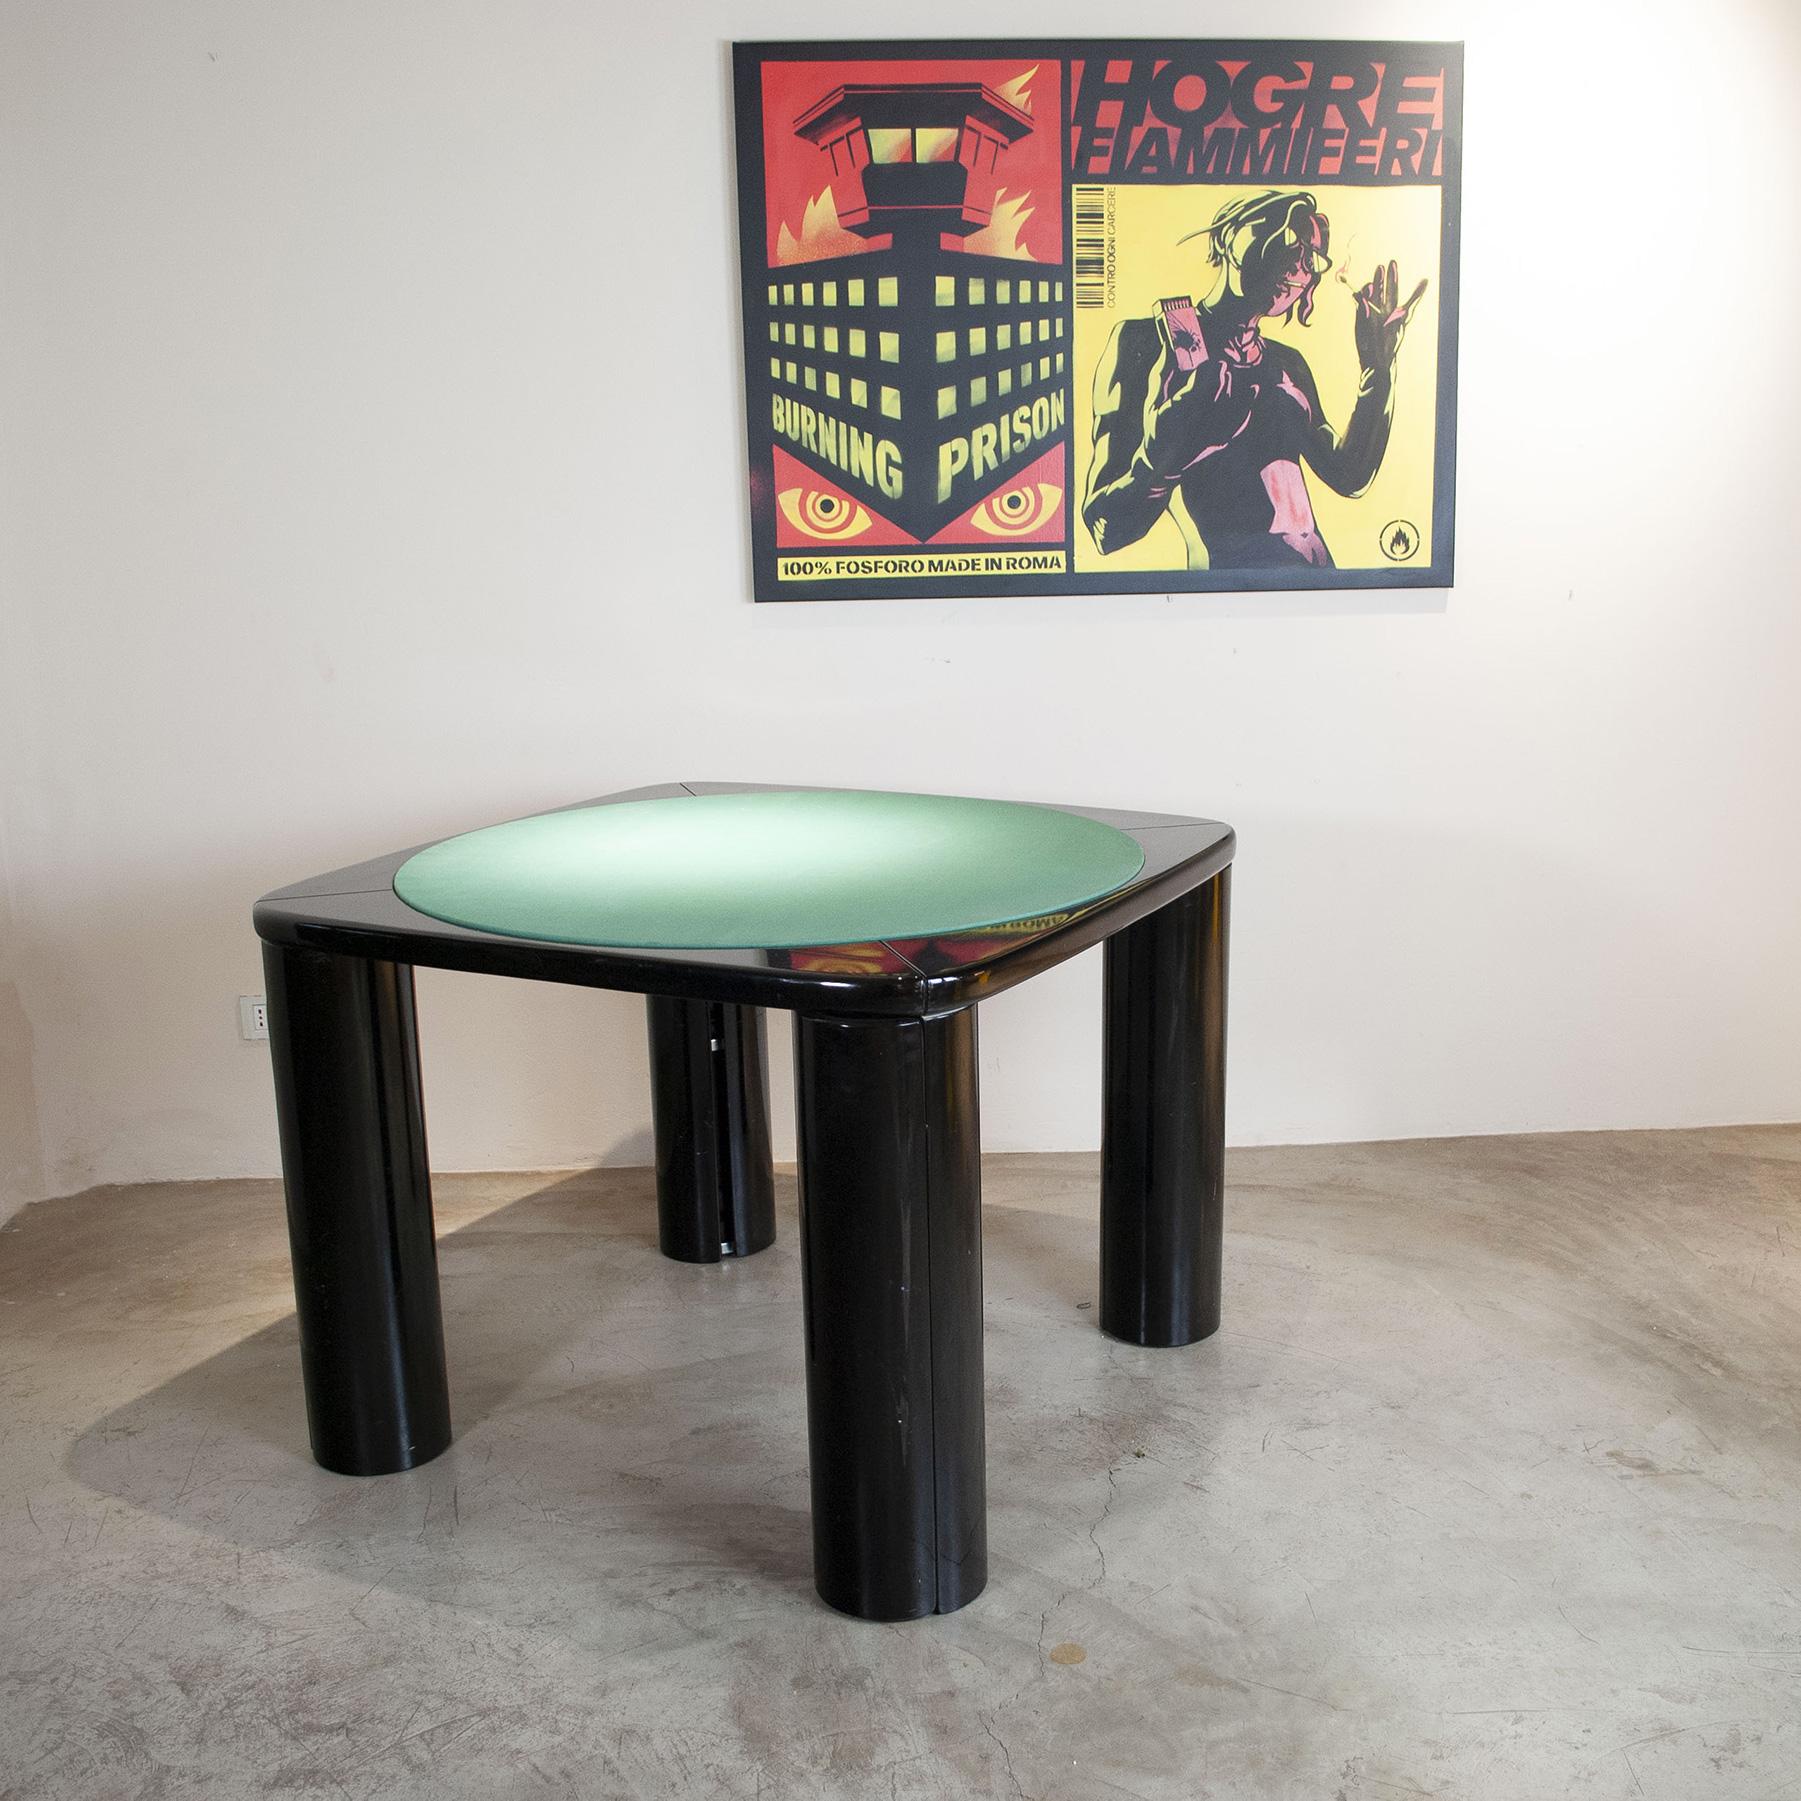 Spieltisch mit drehbaren Beinen, hinter denen sich Regale verbergen. Designer Pierluigi Molinari Produktion Pozzi, Italien, 1970er/80er Jahre. Schwarz lackiertes Holz, mittlerer Teil der Platte mit grünem Stoff bezogen.